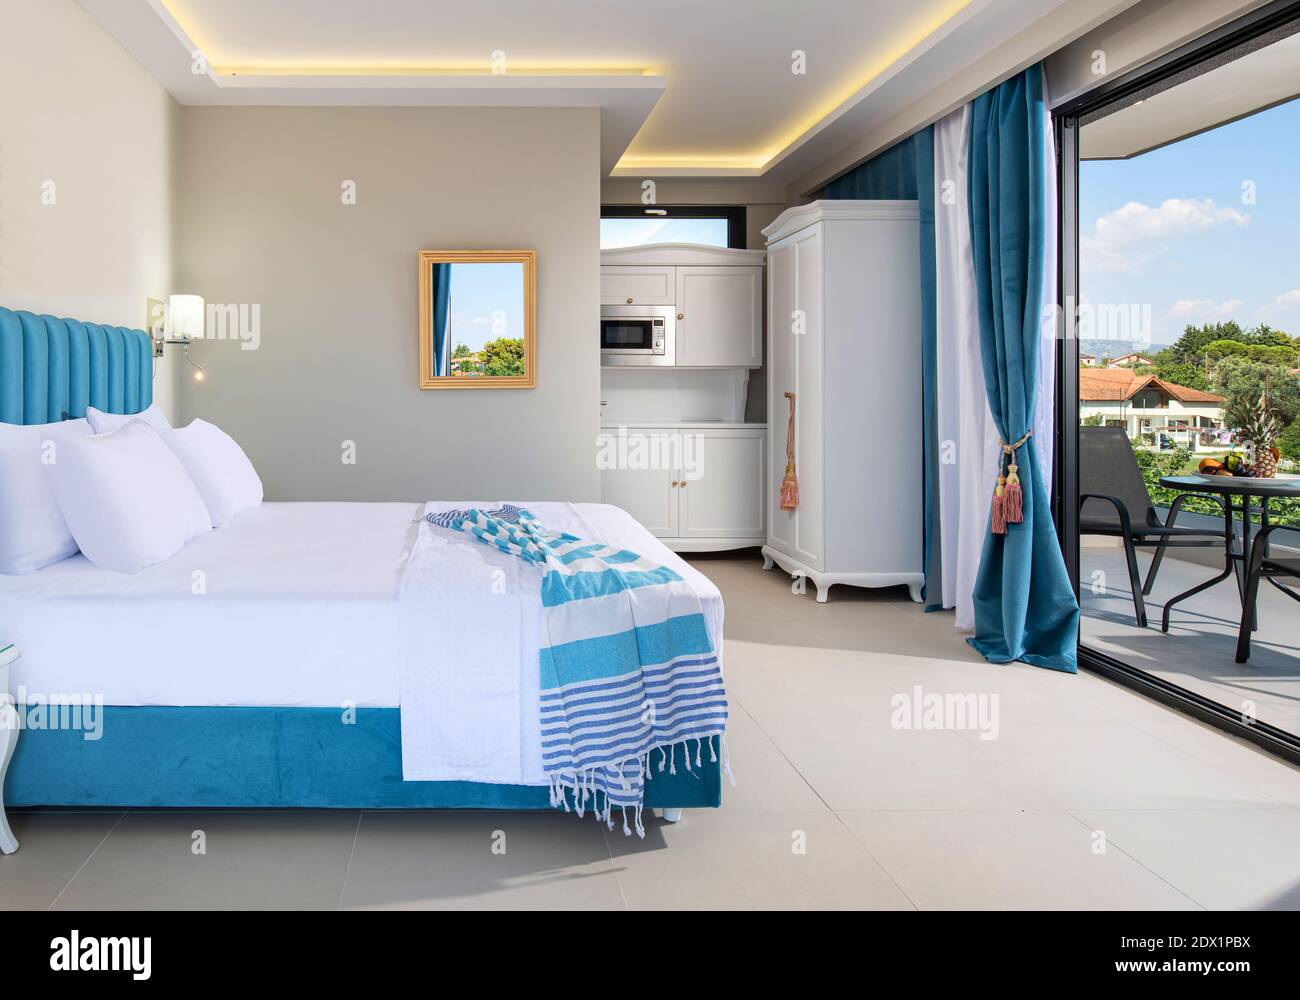 Interni bianchi e blu di stile classico elegante complesso di appartamenti per vacanze estive. Terrazza con finestra aperta nella camera da letto con splendida vista Foto Stock